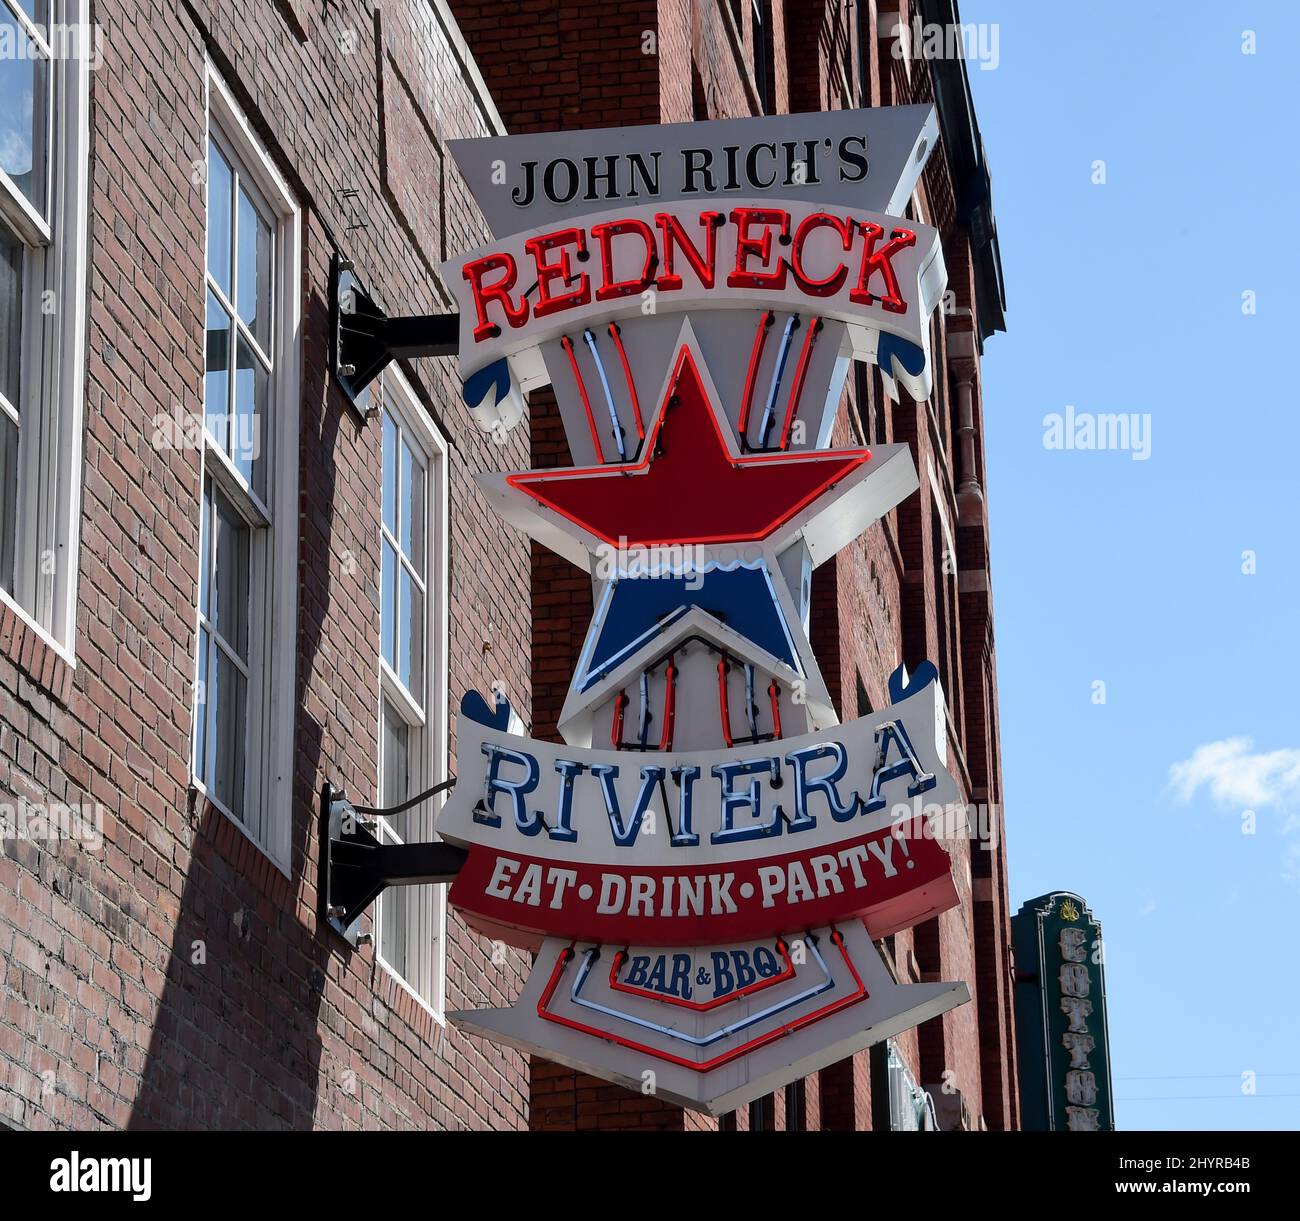 John Rich est le premier à rouvrir son Redneck Riviera Bar & BBQ sur Lower Broadway à Nashville, Tennessee., le 11 mars 2020. Banque D'Images